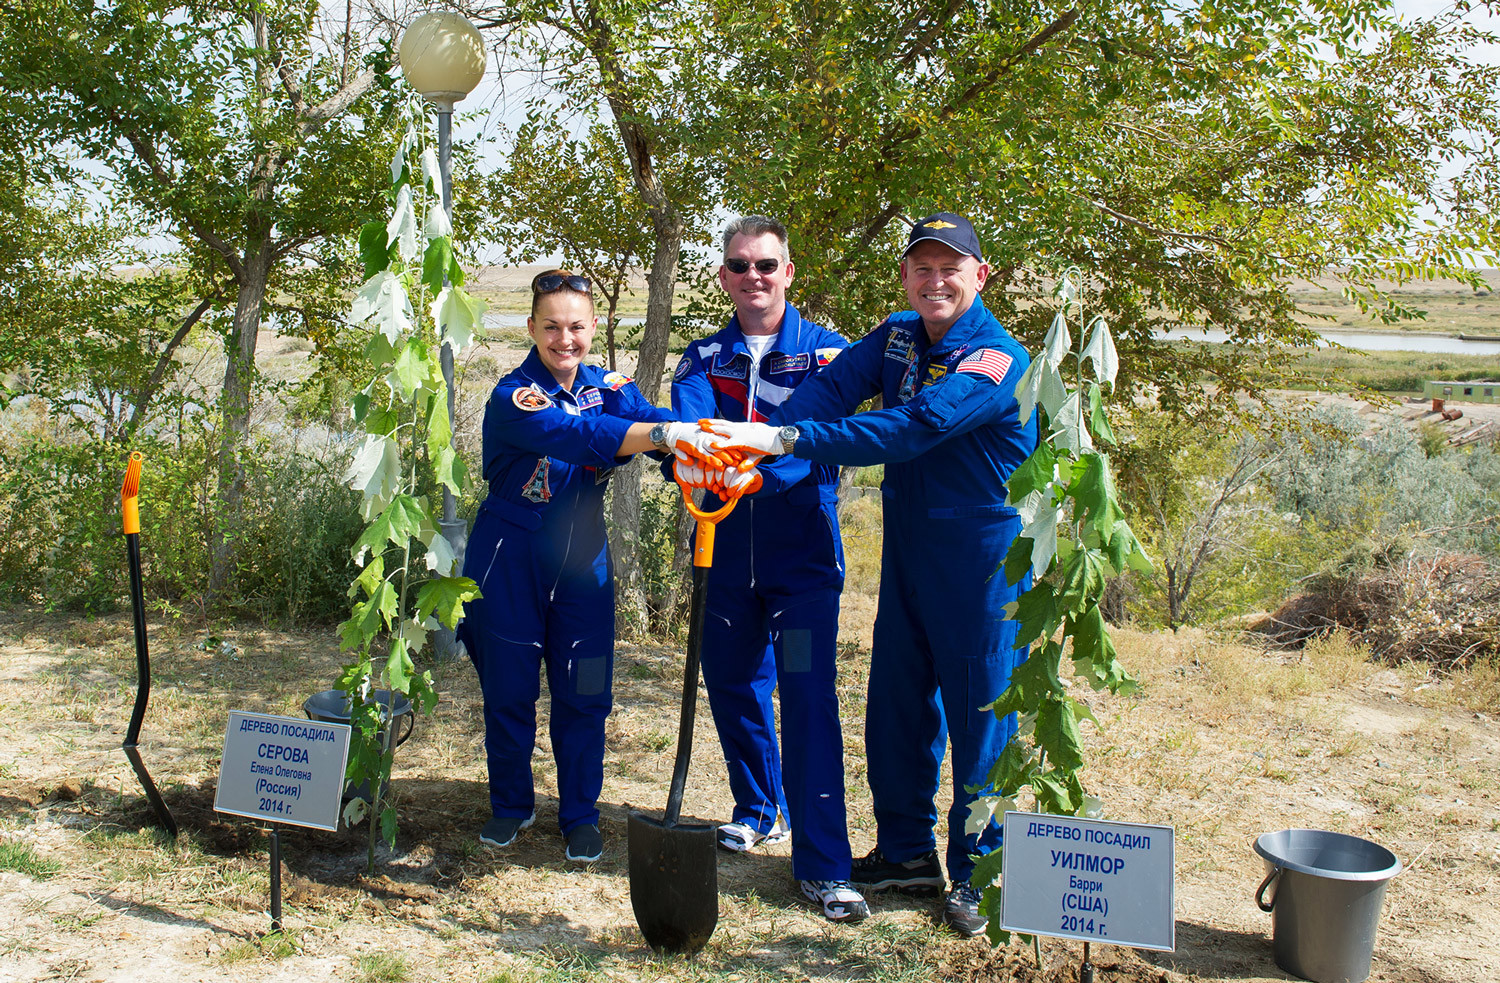 Posadka Sojuza TMA-14M, Aleksander Samokutjajev (sredina) in Jelena Serova (oba Roskosmos) ter Barry Wilmore (NASA) med sajenjem dreves v vesoljskem centru Bajkonur, september 2014